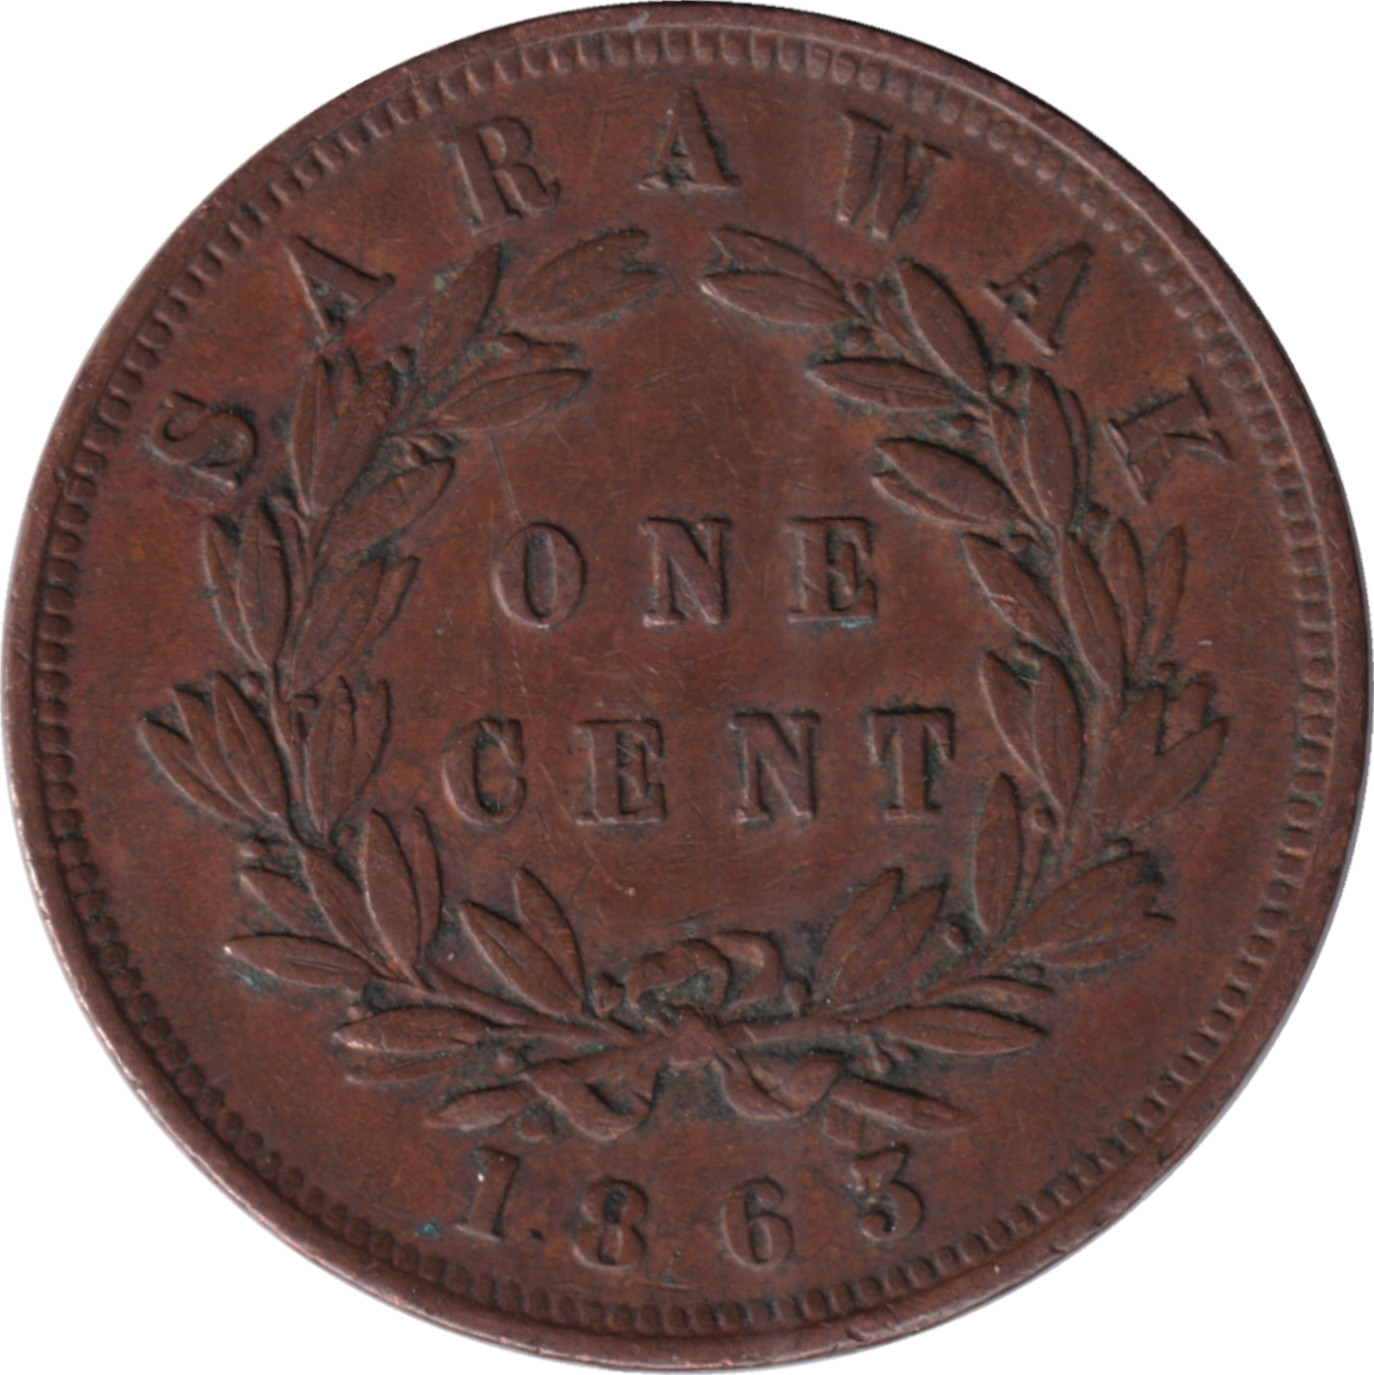 1 cent - James Brooke